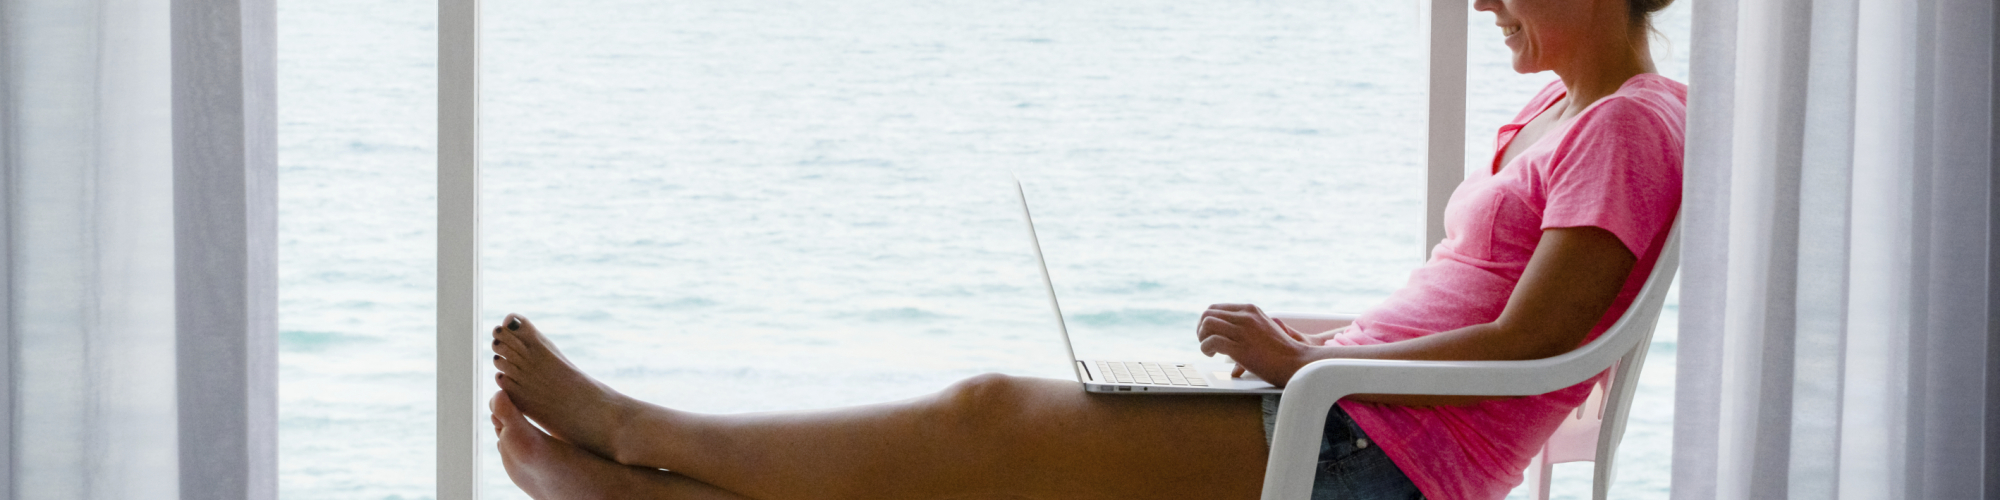 Femme assis sur une terrasse, bord de mer, avec un ordinateur portable